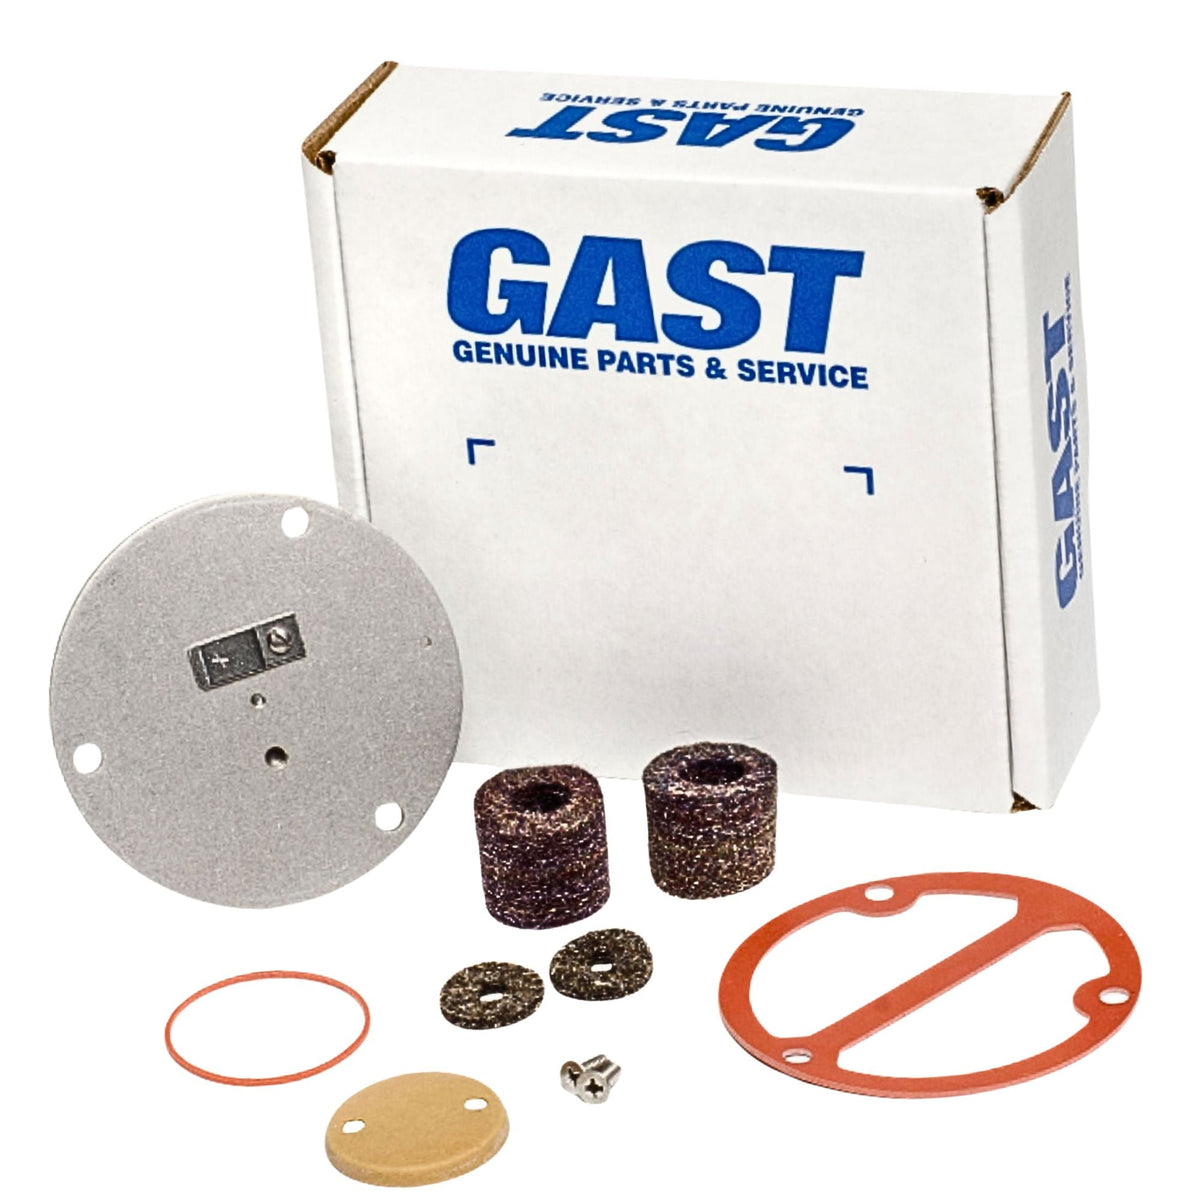 Gast | LOA/LAA Service Kit | K767 used on gast product line